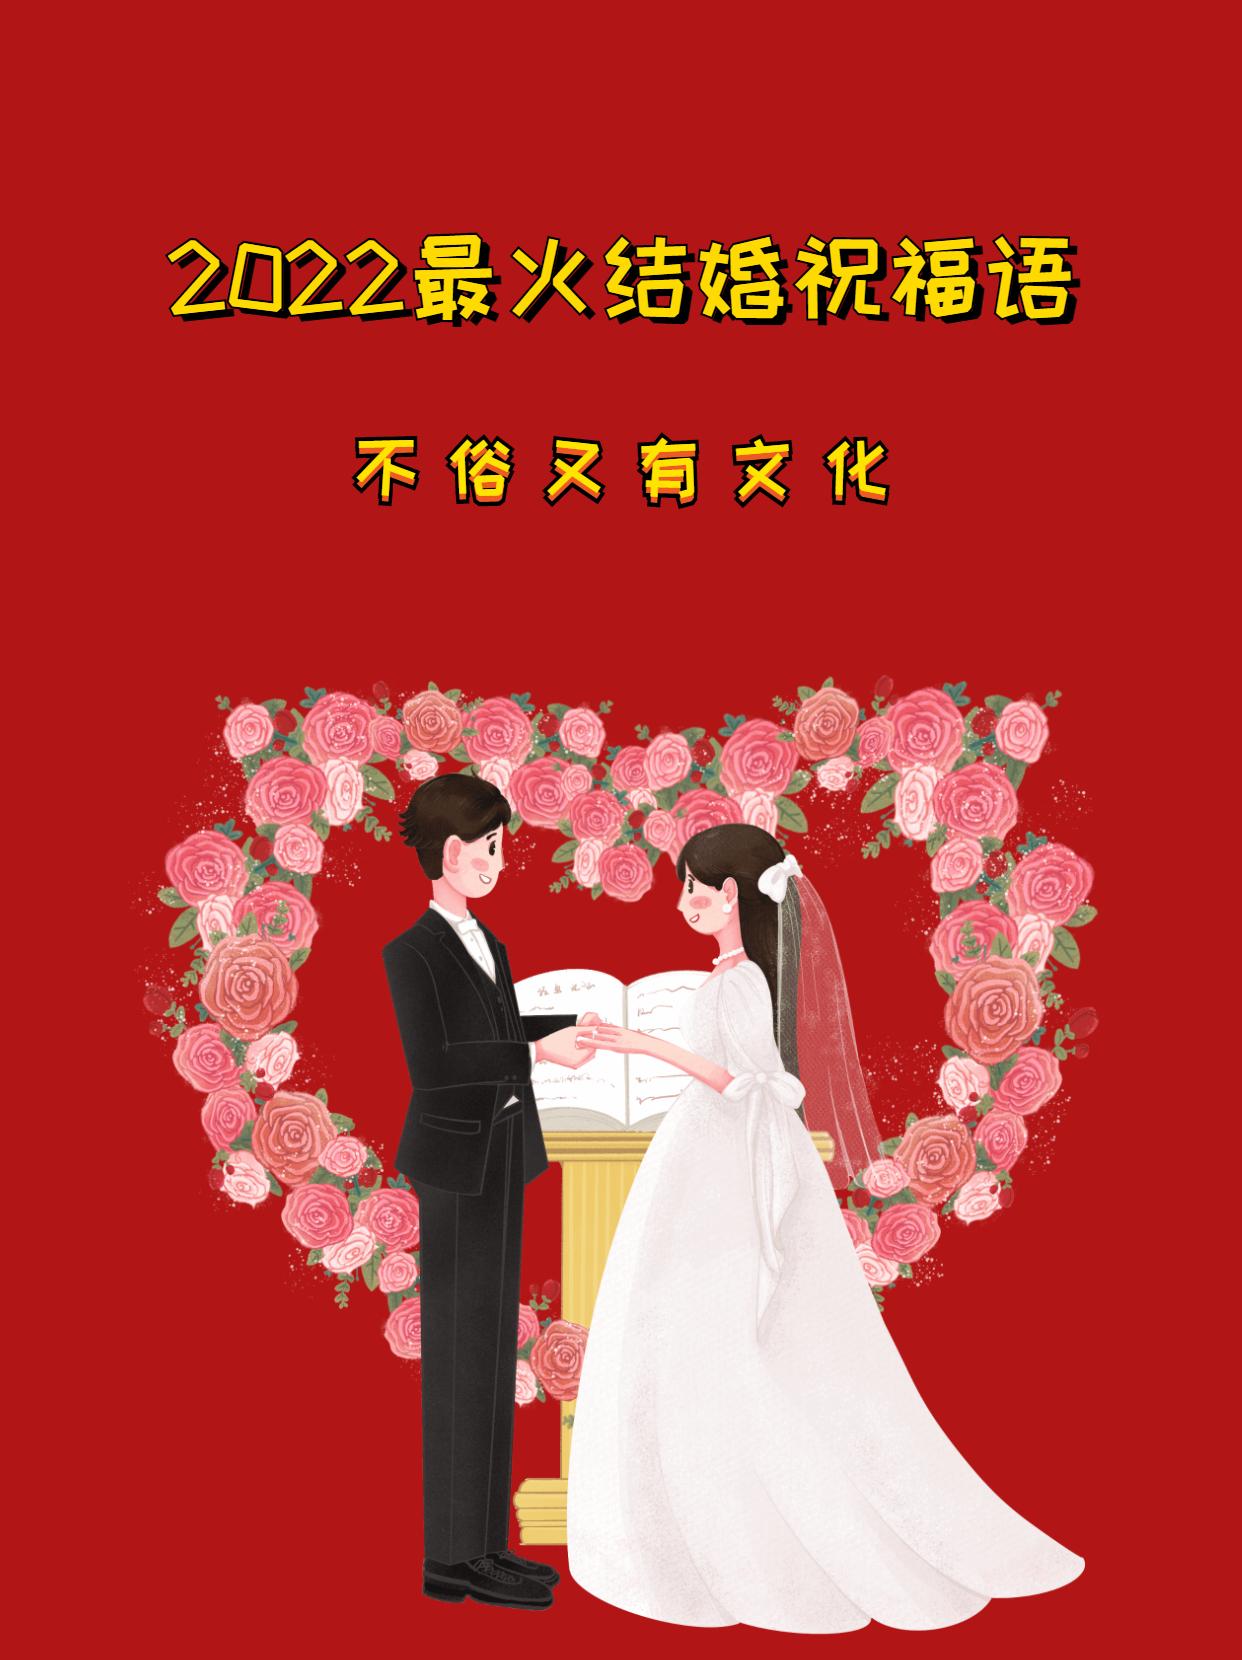 结婚文案短句,2022最火结婚祝福语 